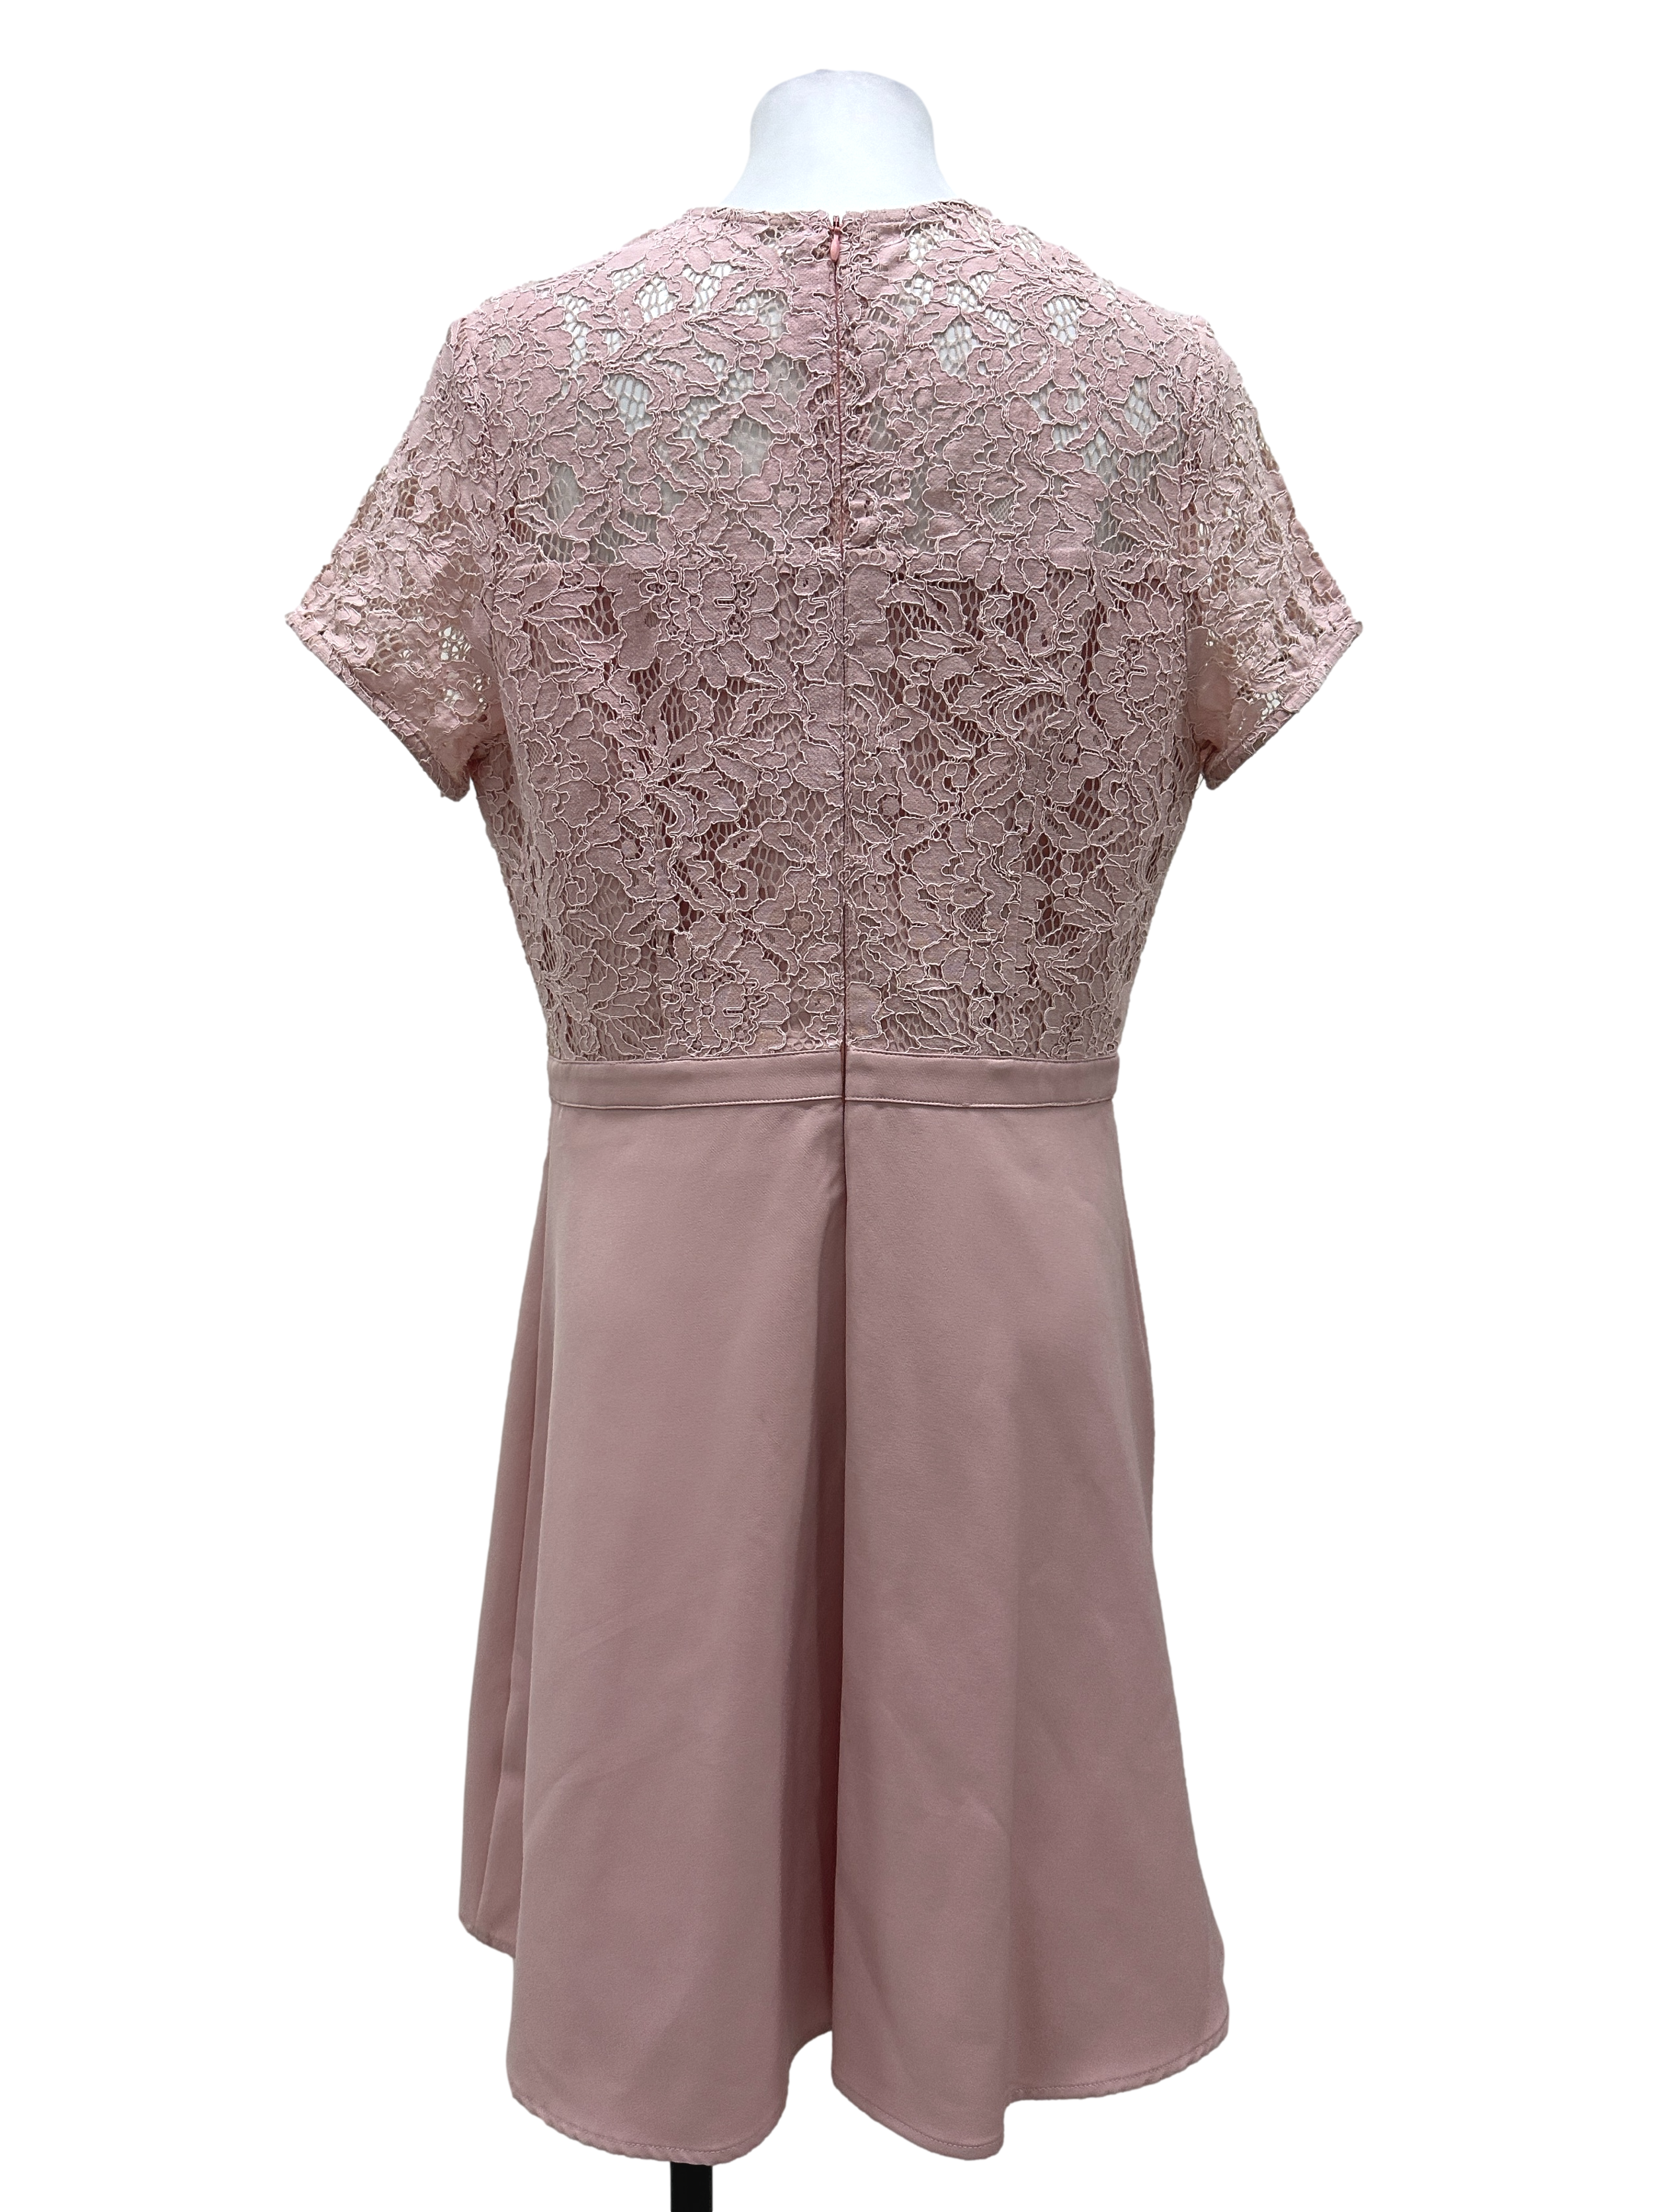 Pastel Pink Floral Lace Illusion Neck A-Line Dress